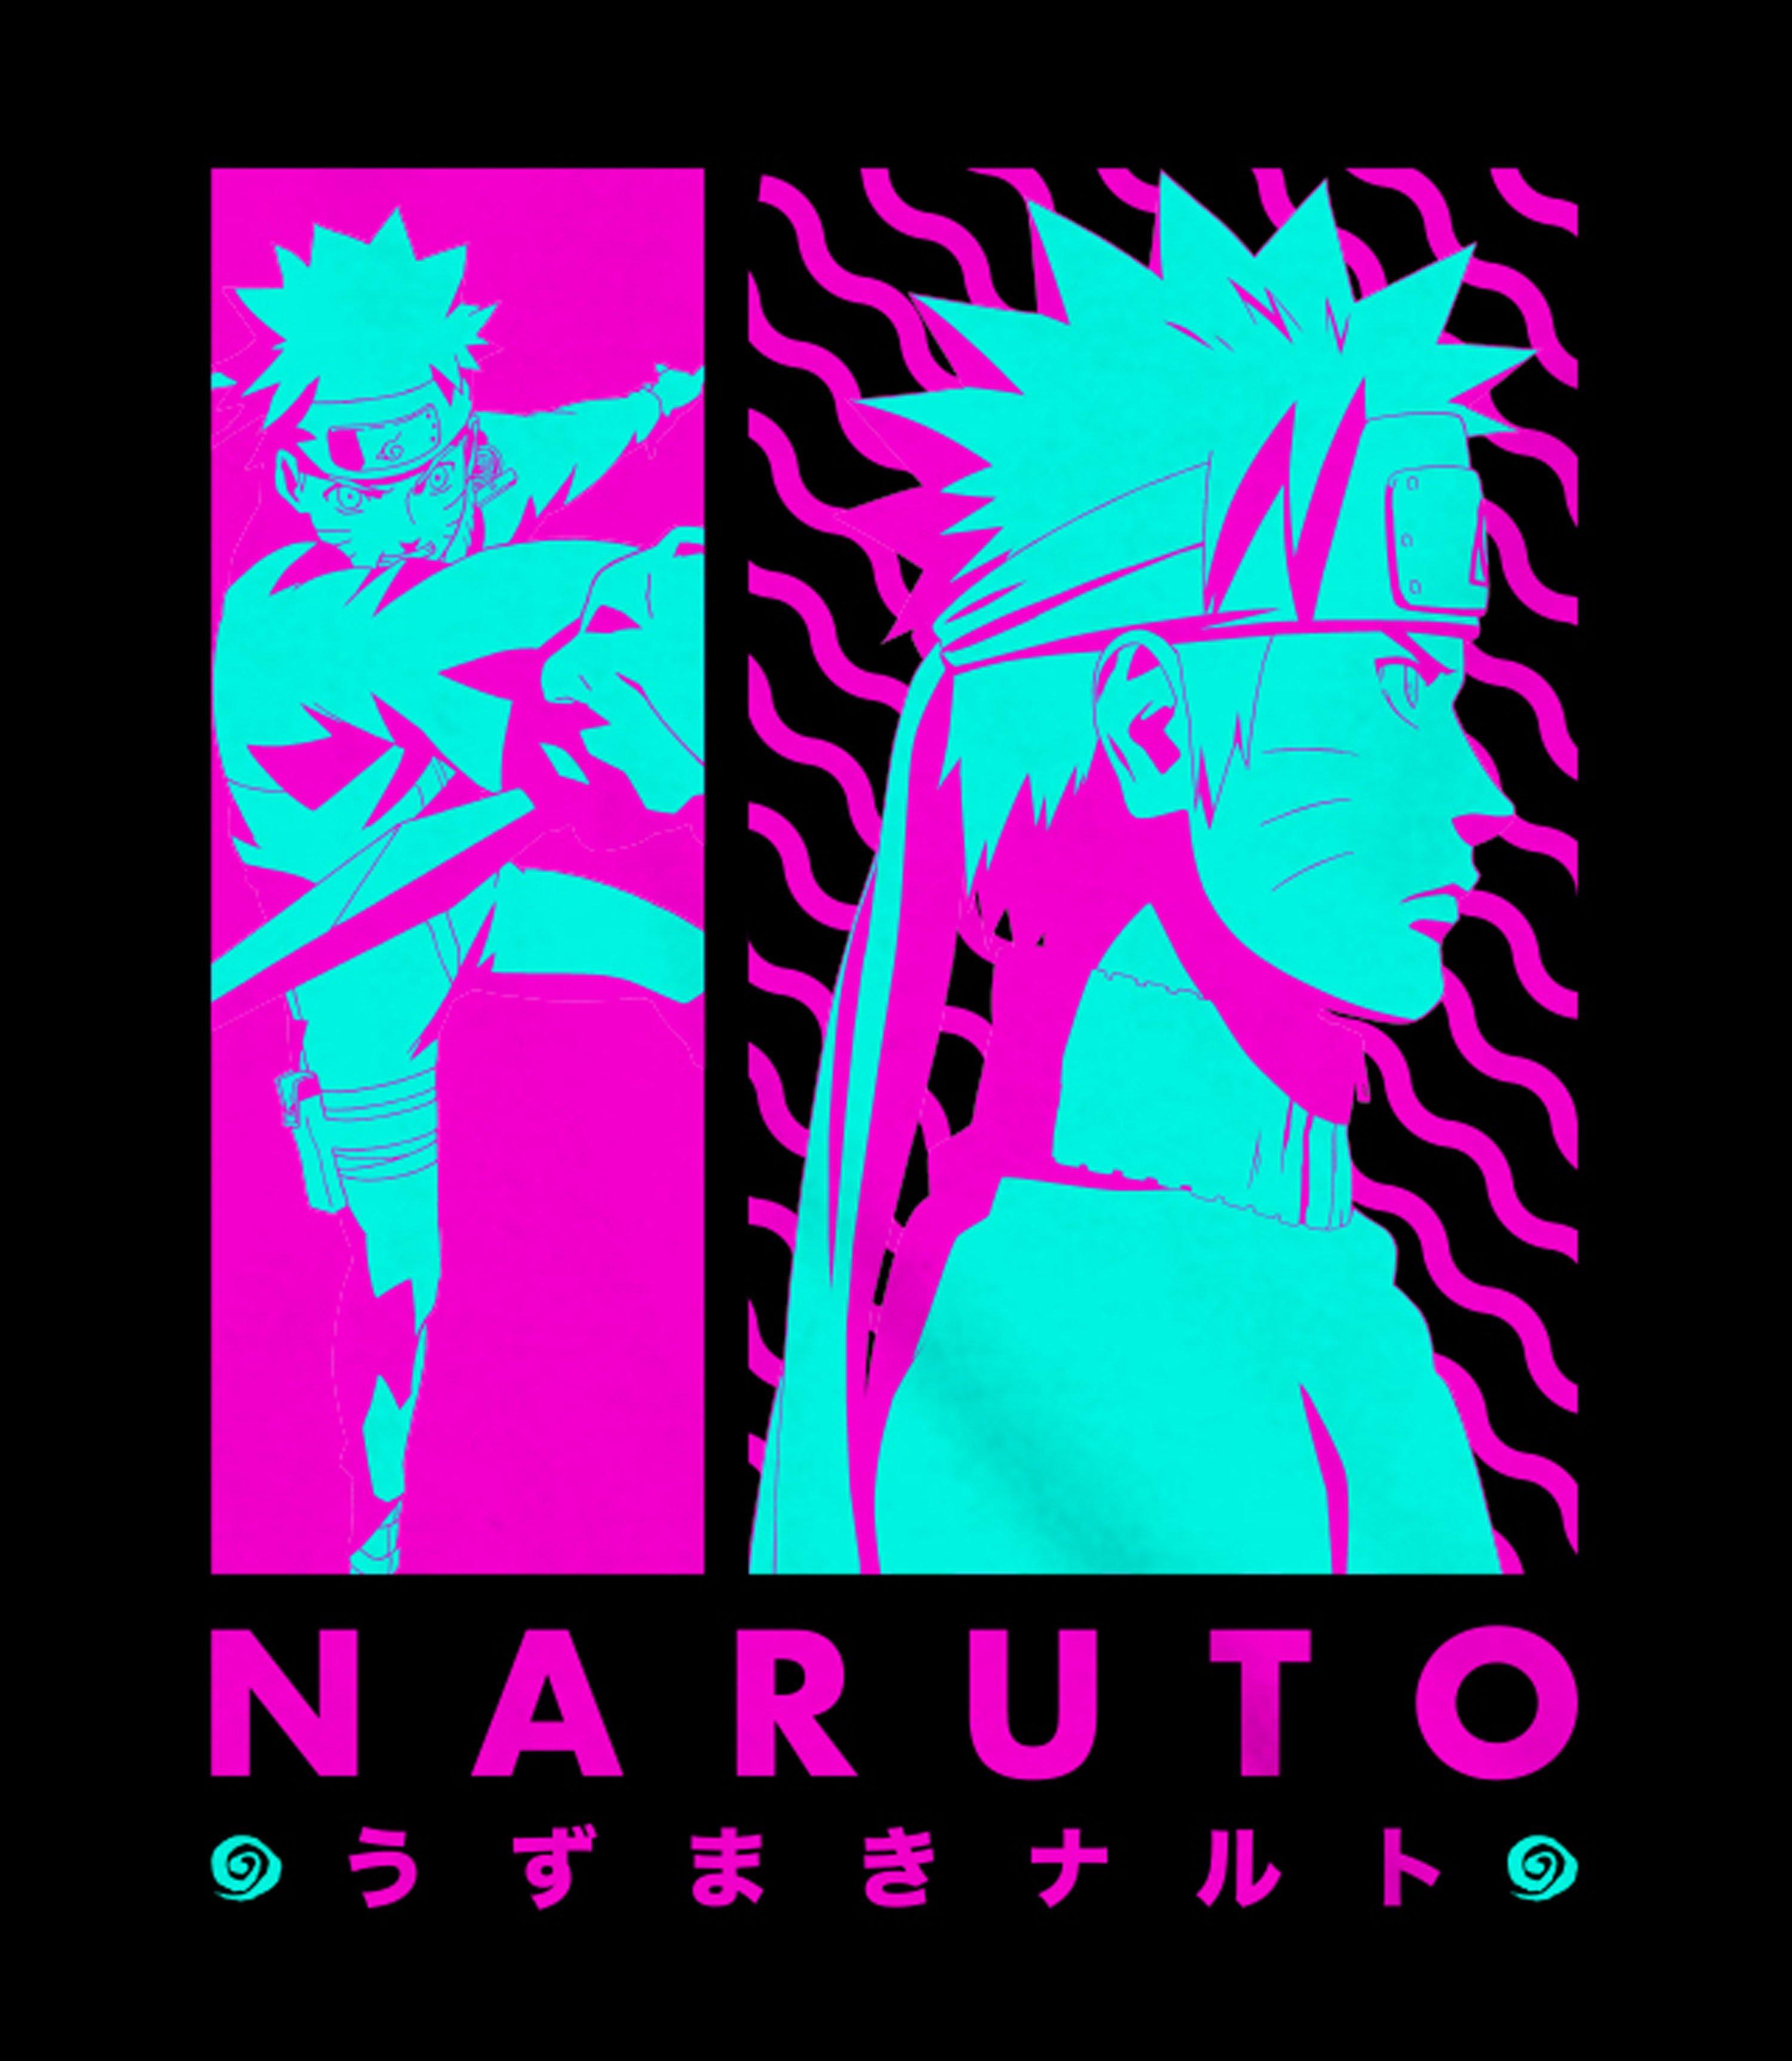 Shirt XL - Naruto Uzumaki